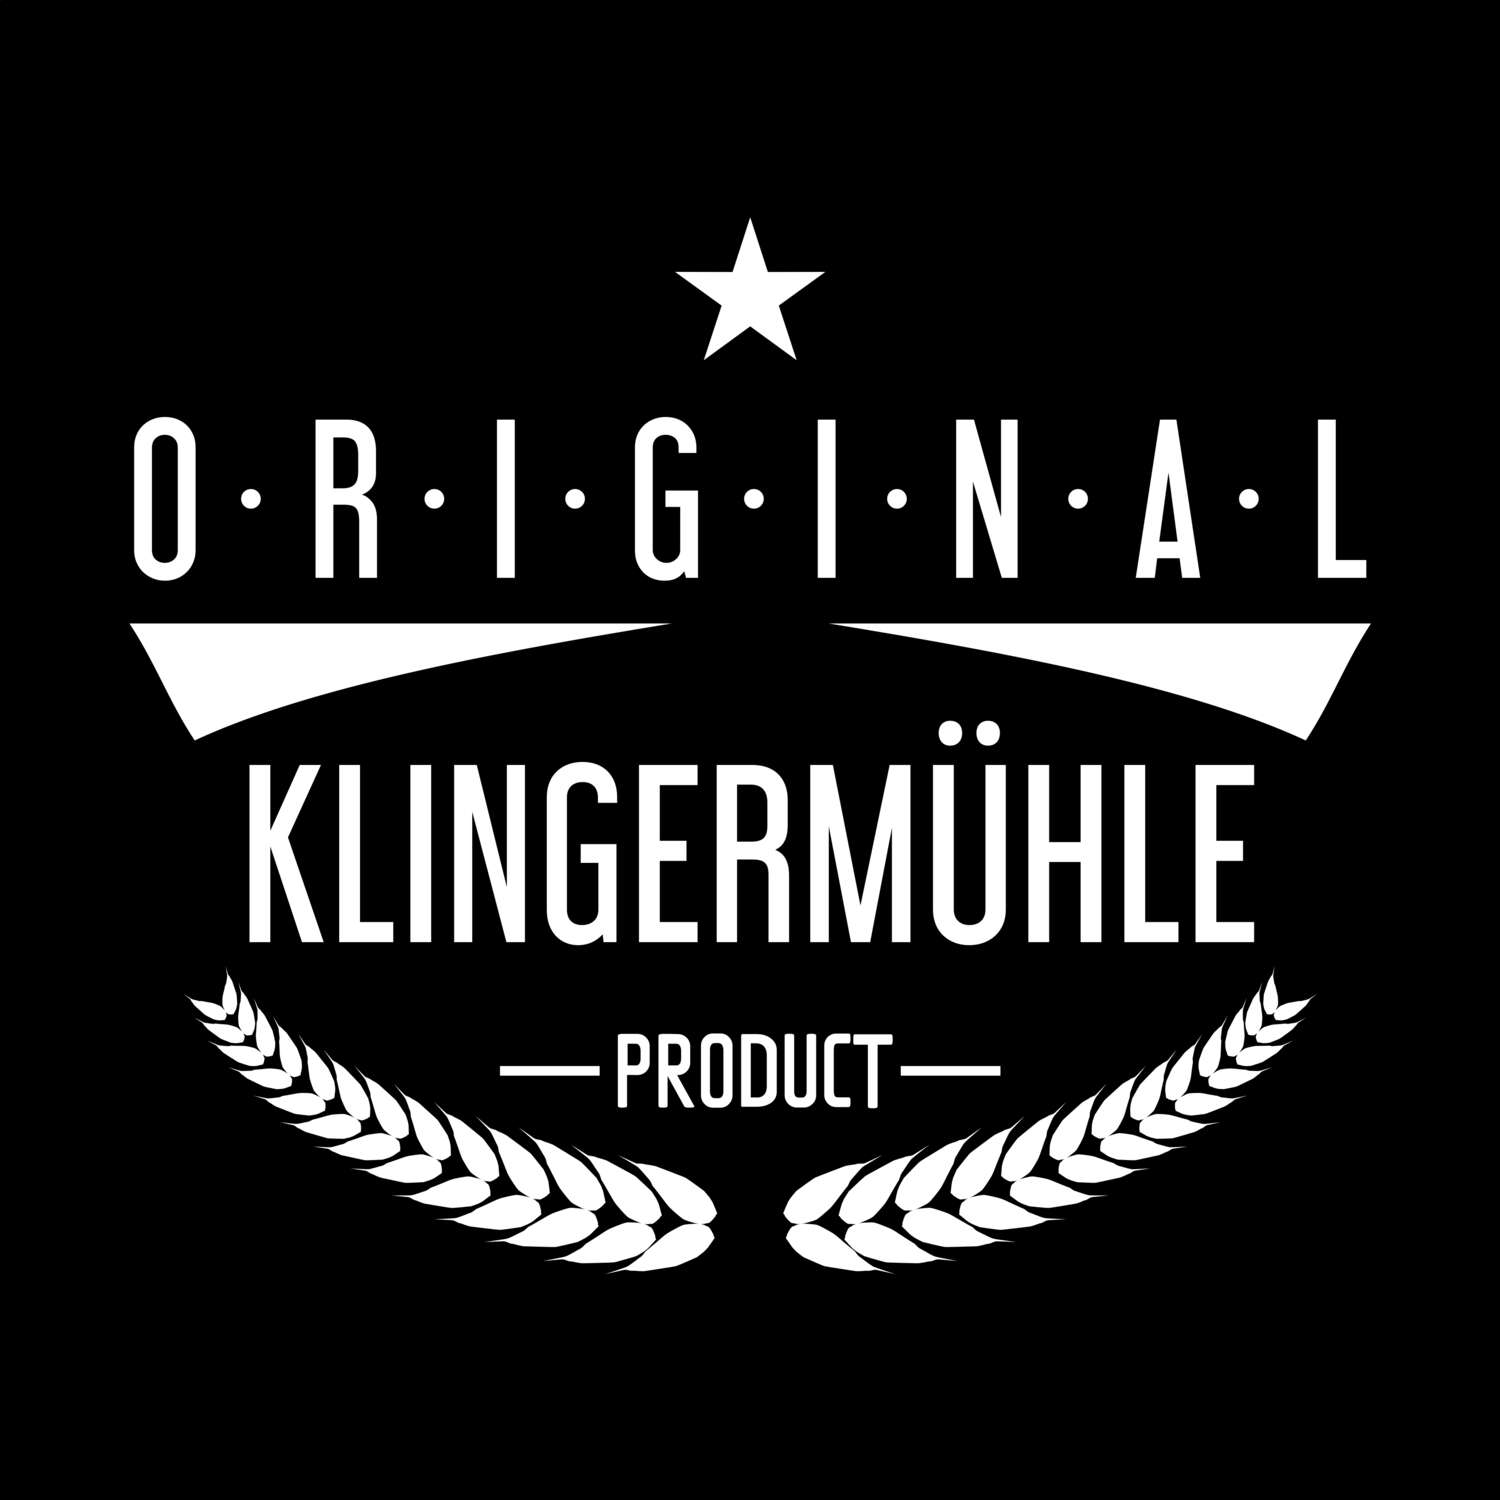 Klingermühle T-Shirt »Original Product«